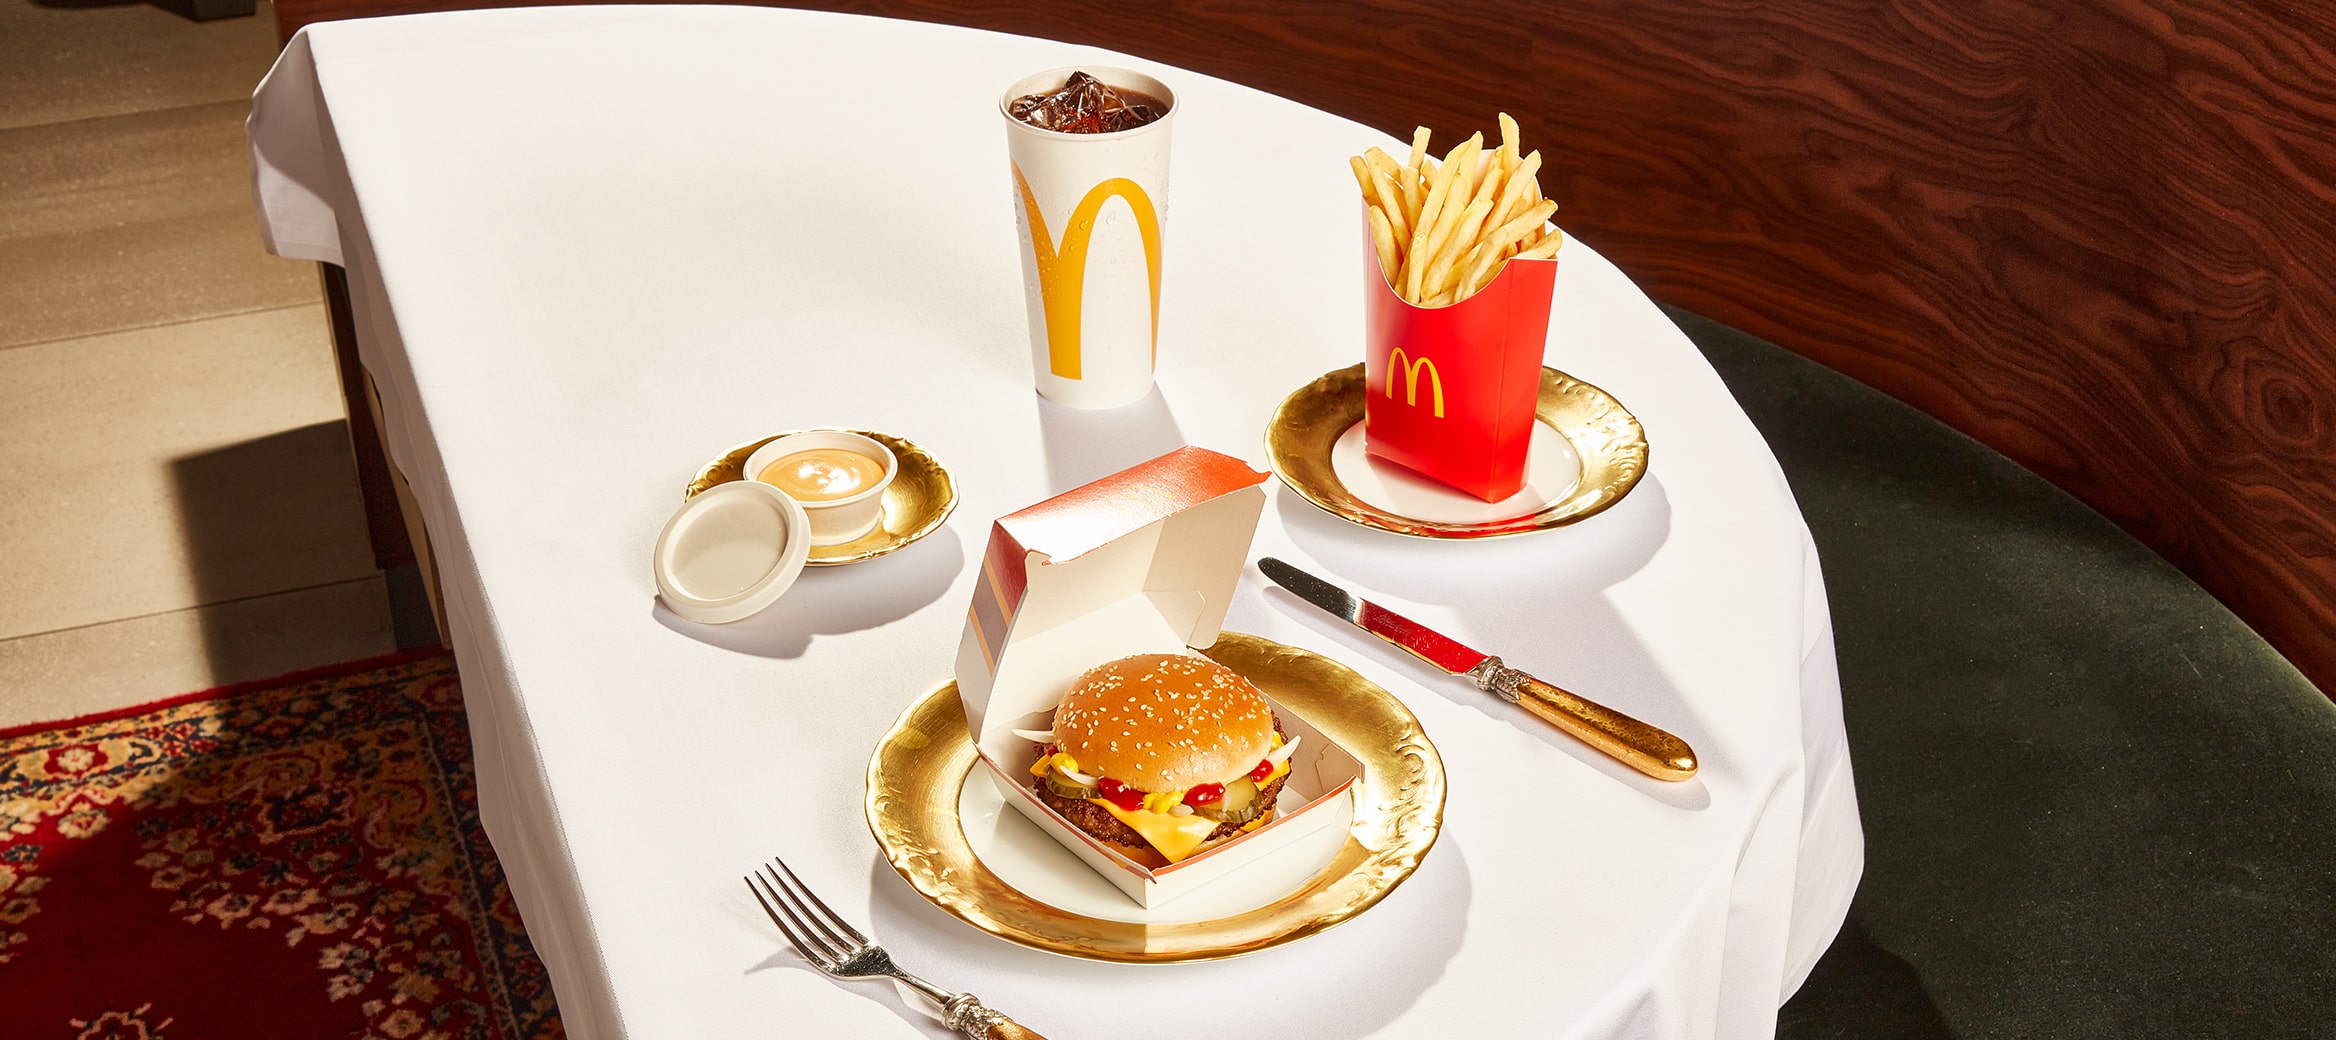 Wir sehen einen mit Gold gedeckten Tisch, auf dem das exklusive McMenü® mit Hamburger Royal Cheese, Pommes, Cola und limitiertem Cheese Dip angerichtet ist.